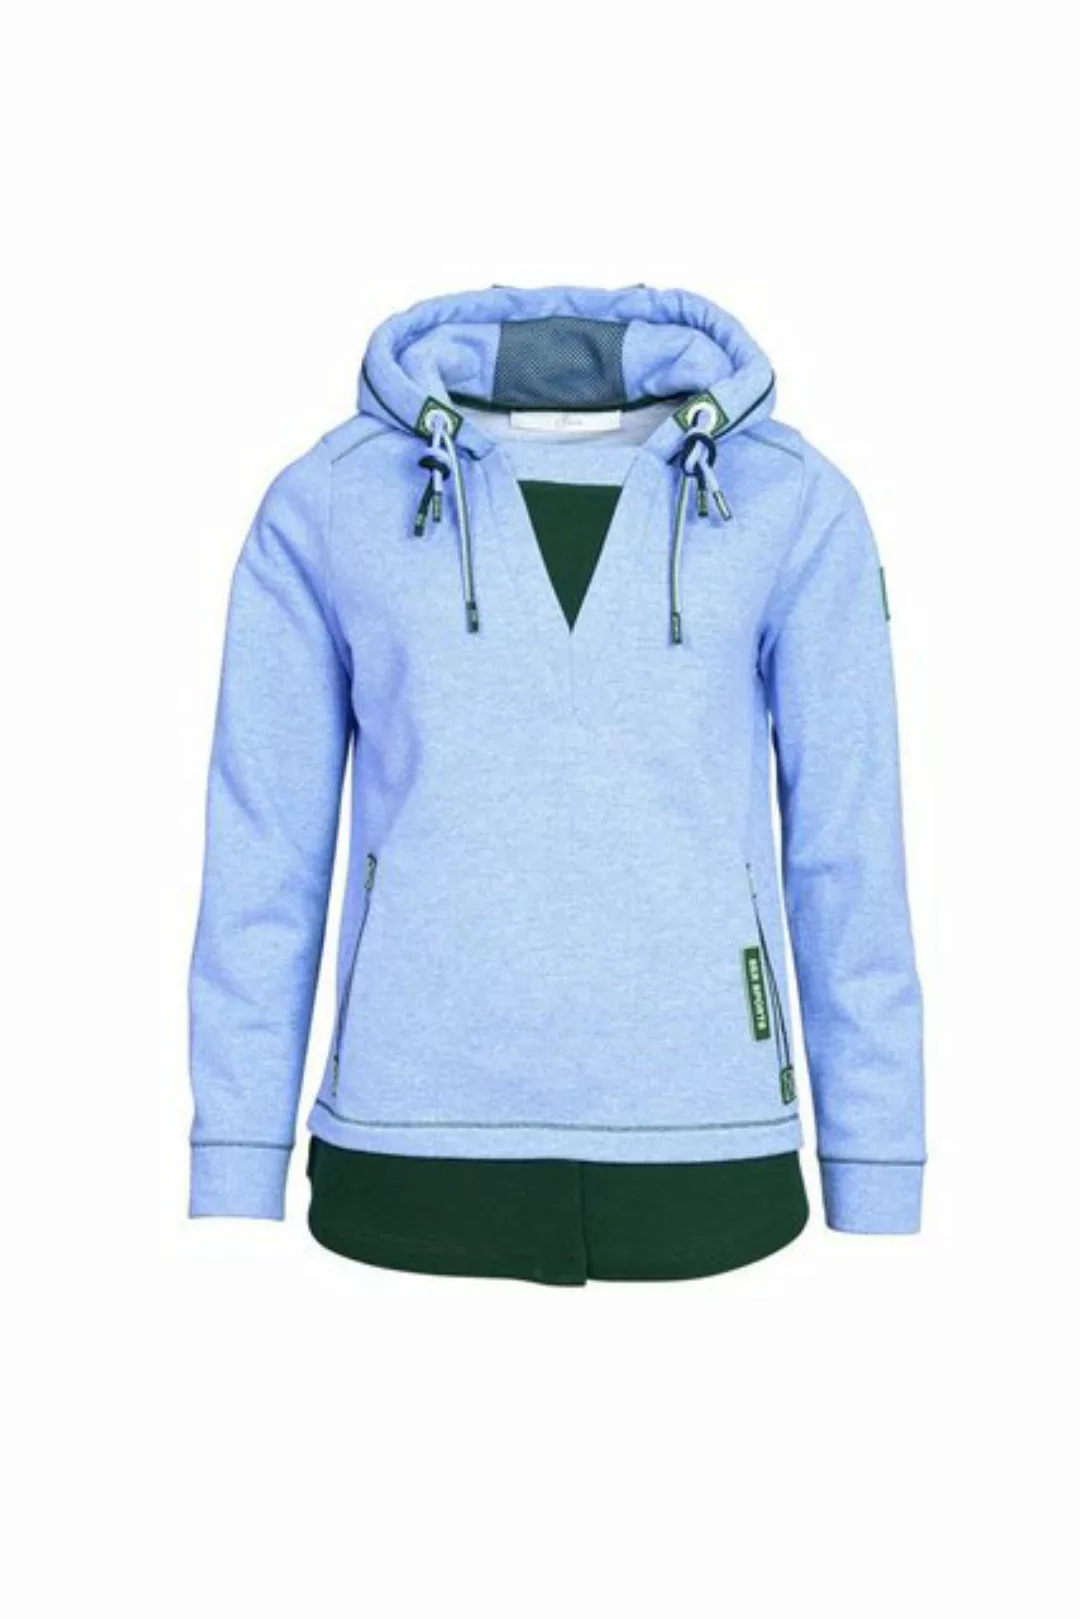 SER Sweatshirt Sweatshirt, 2 in 1 Optik, W9230603 auch in großen Größen günstig online kaufen